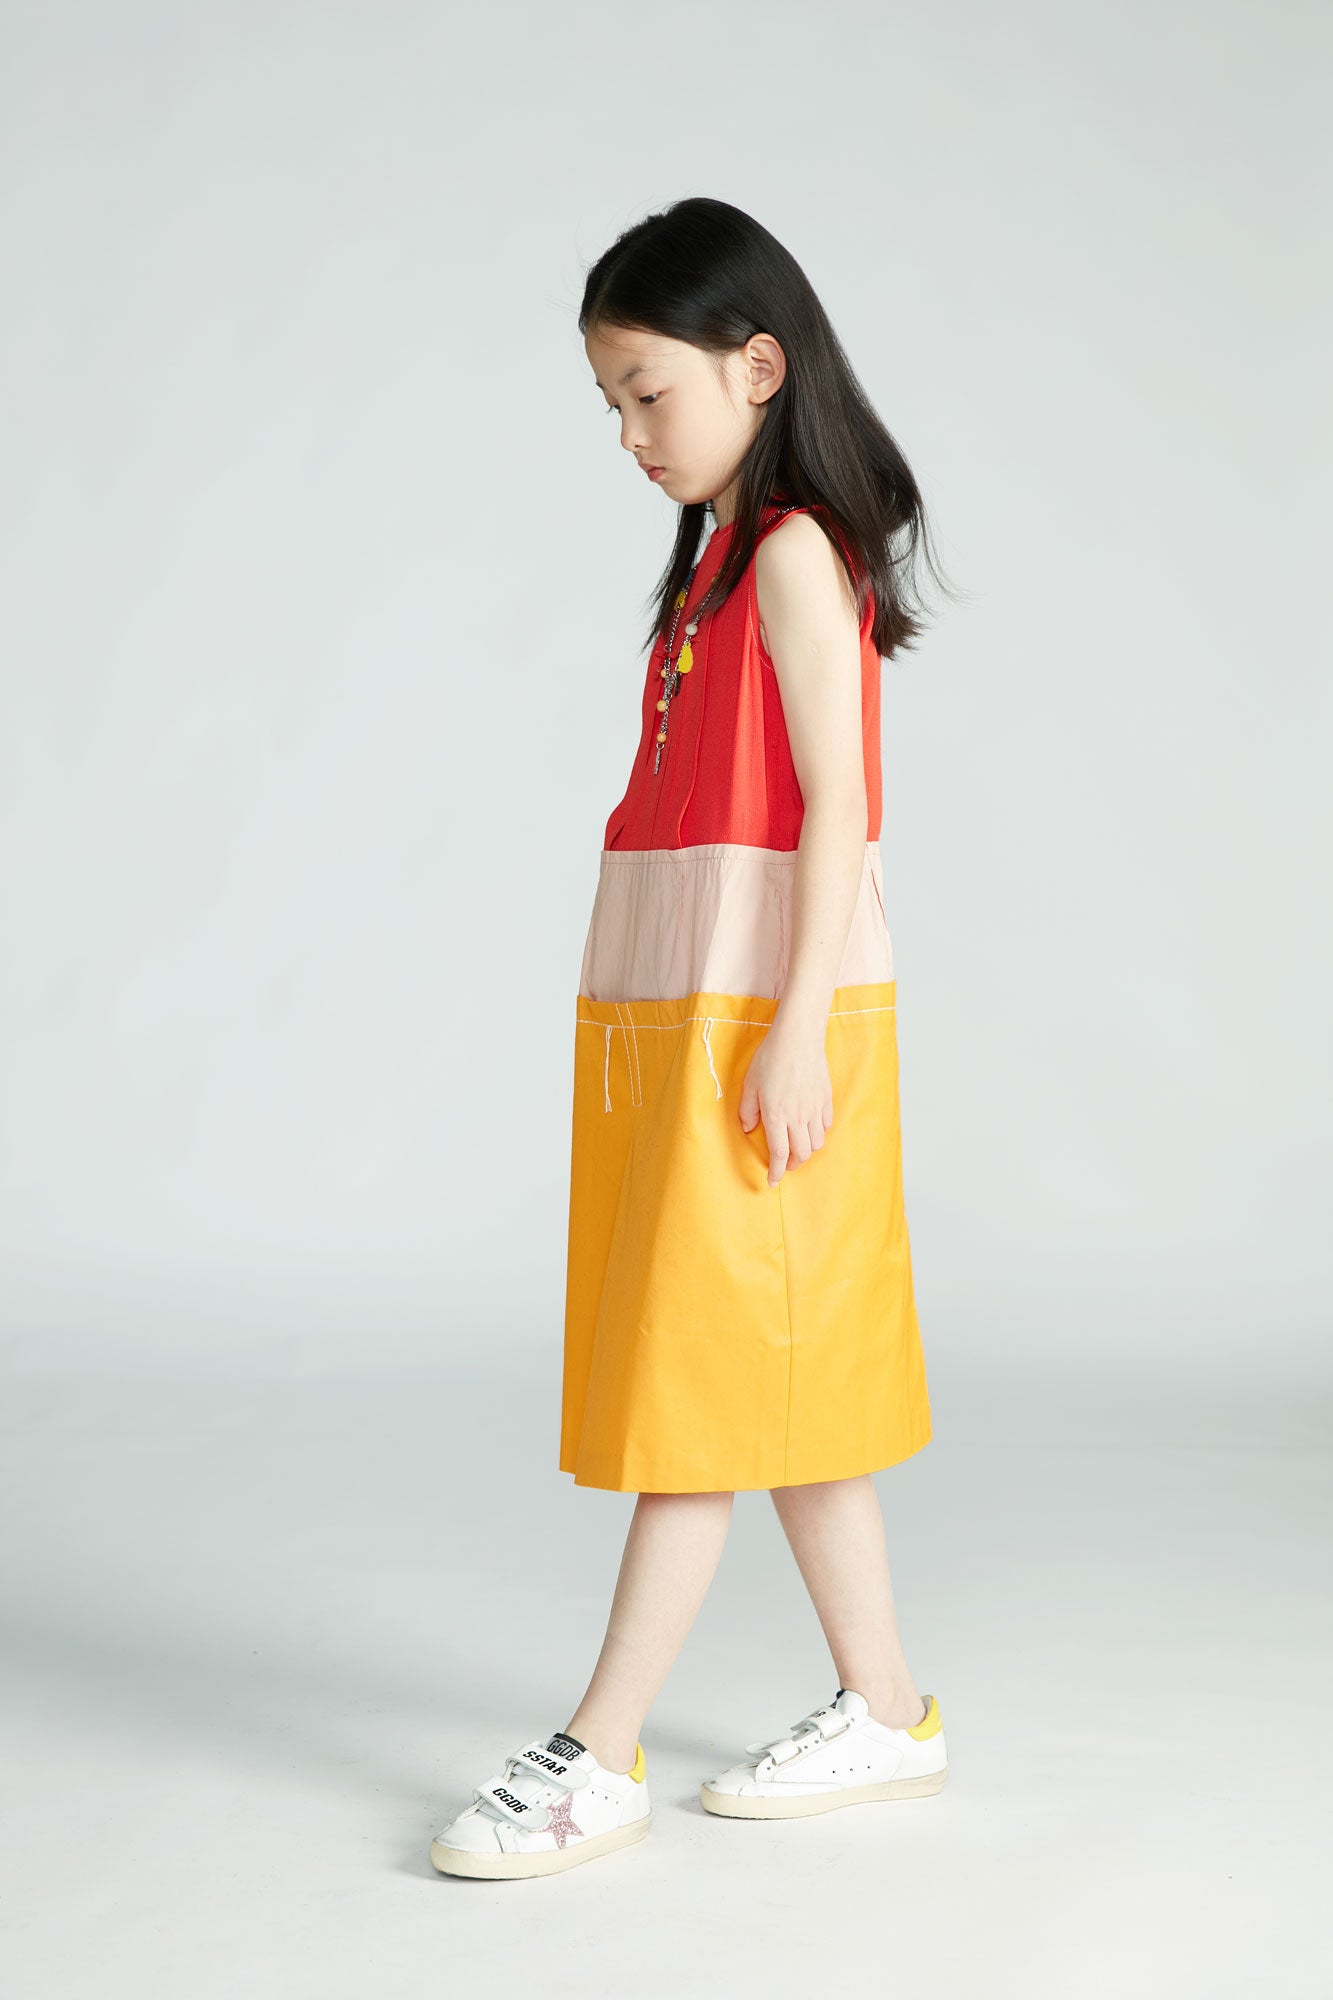 Girls Red & Yellow Dress